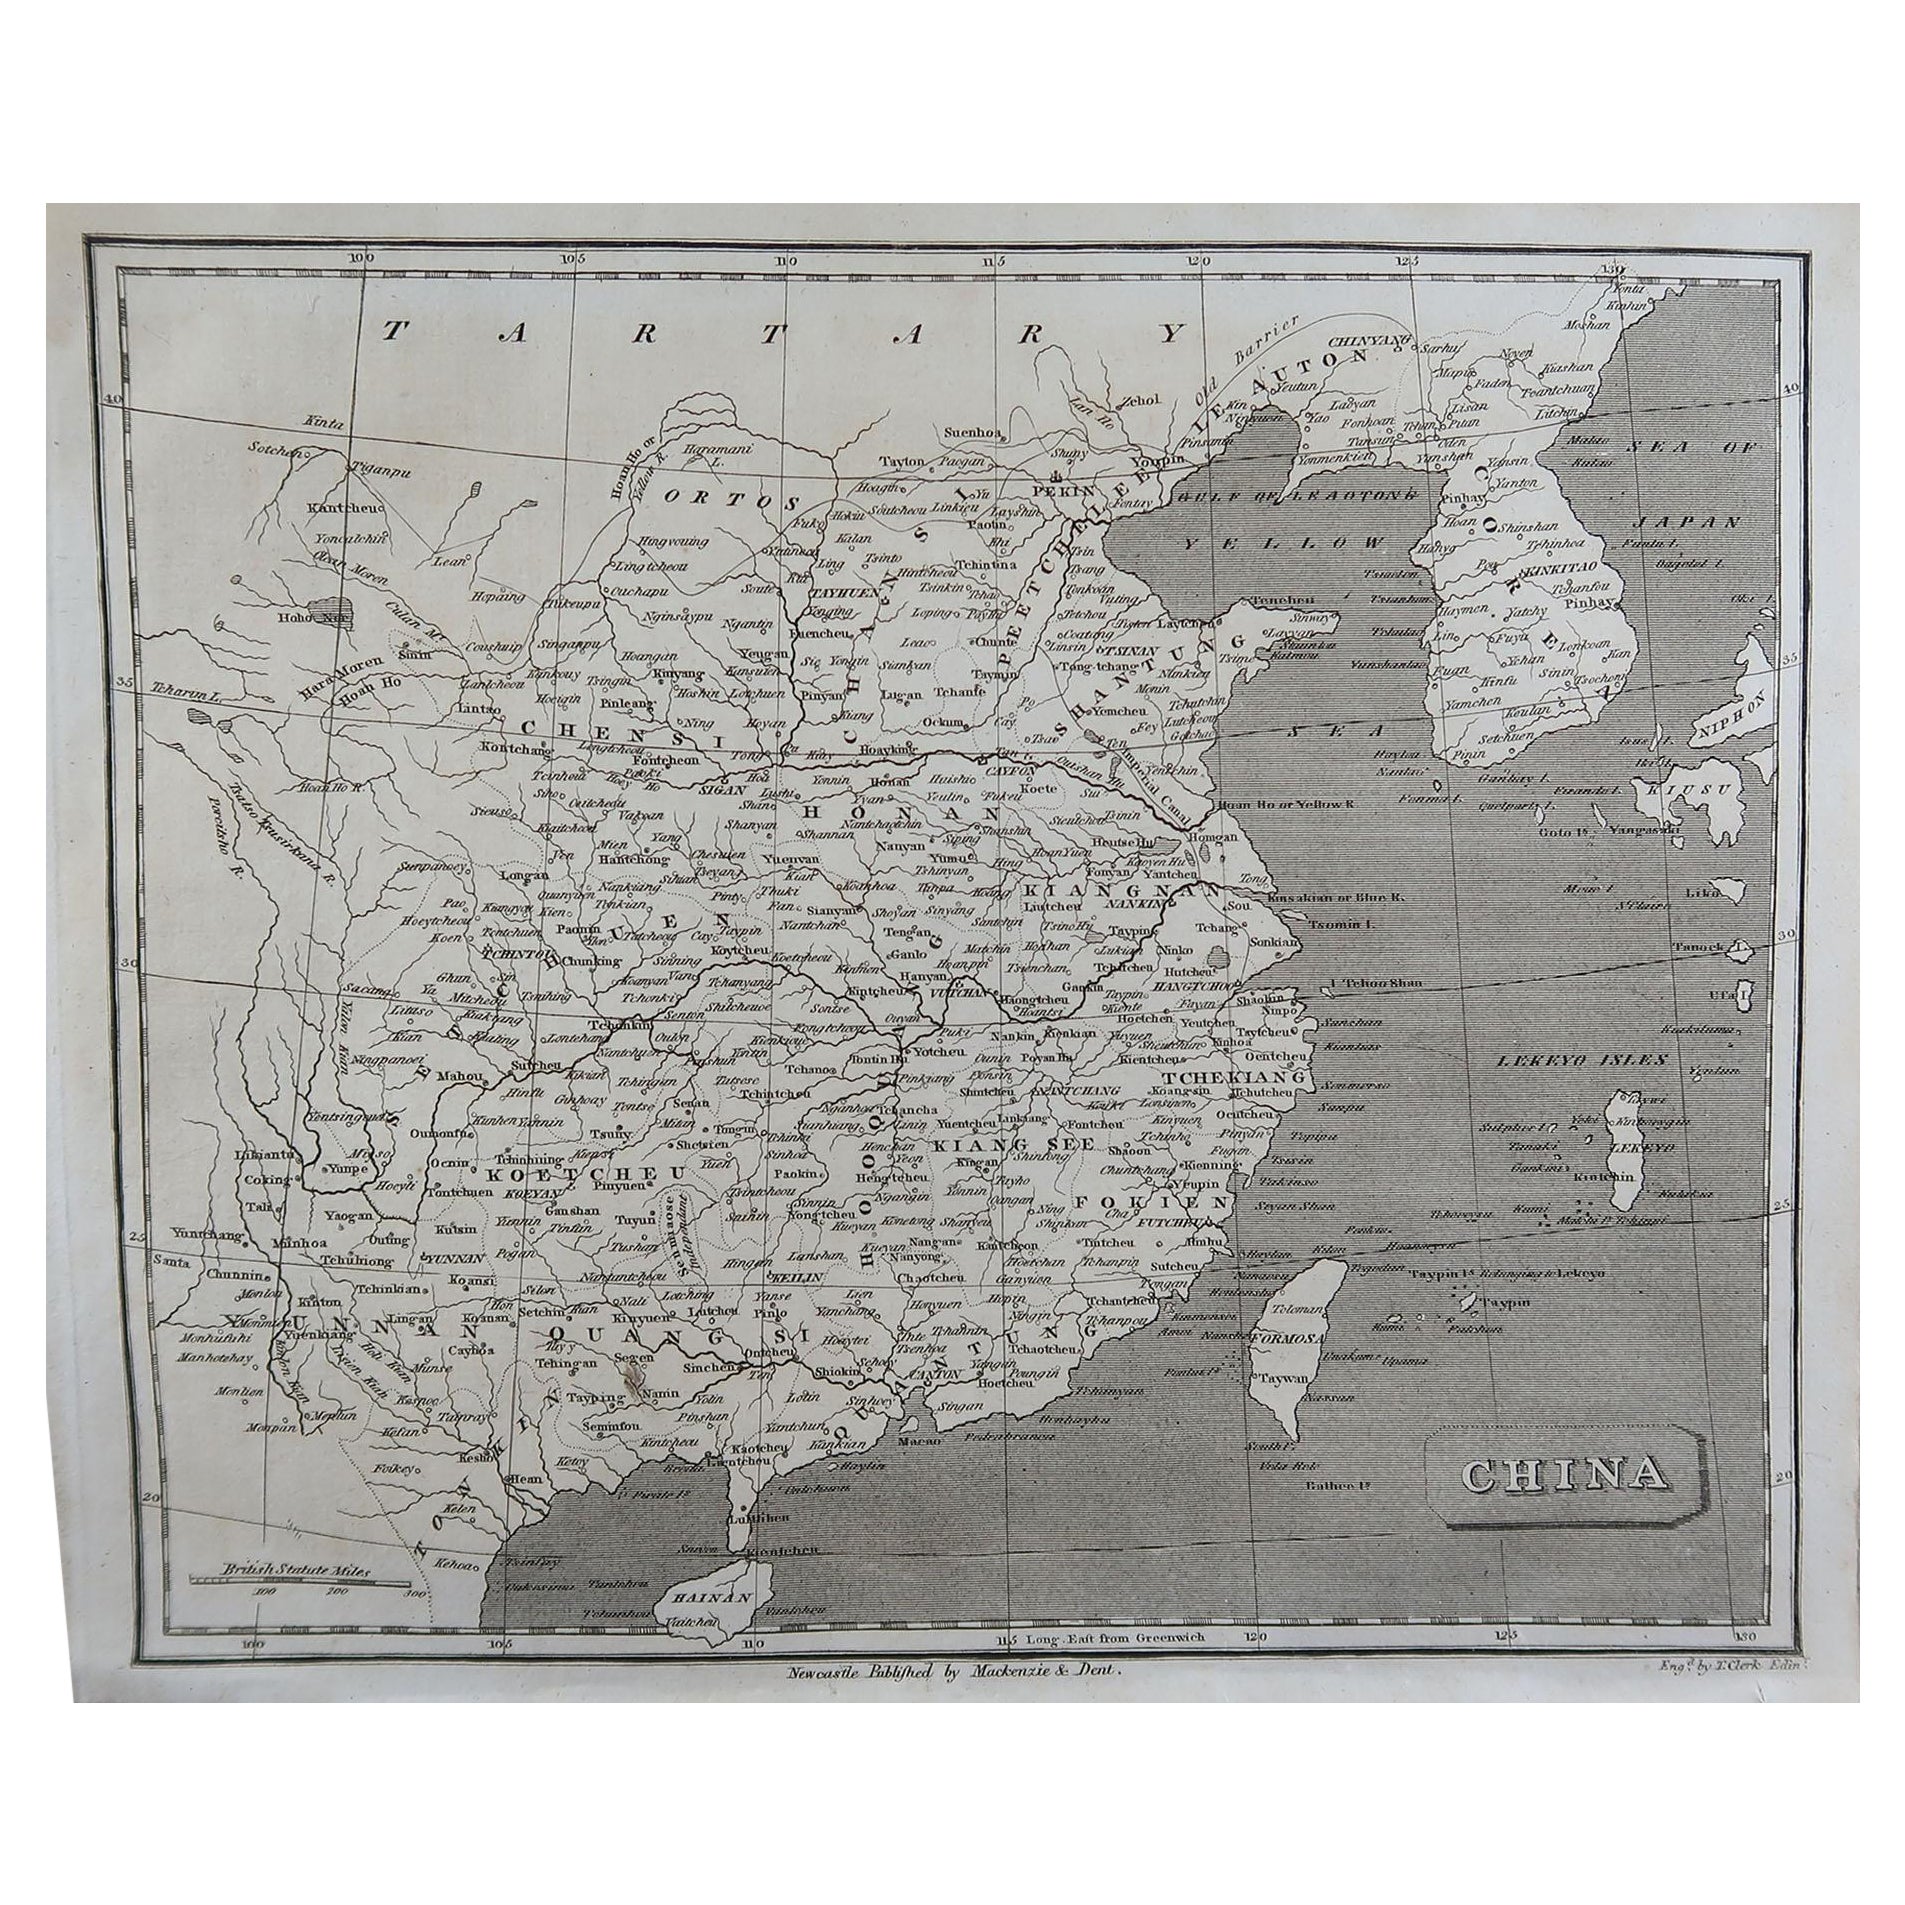 Mappa antica originale della Cina di Thomas Clerk, 1817